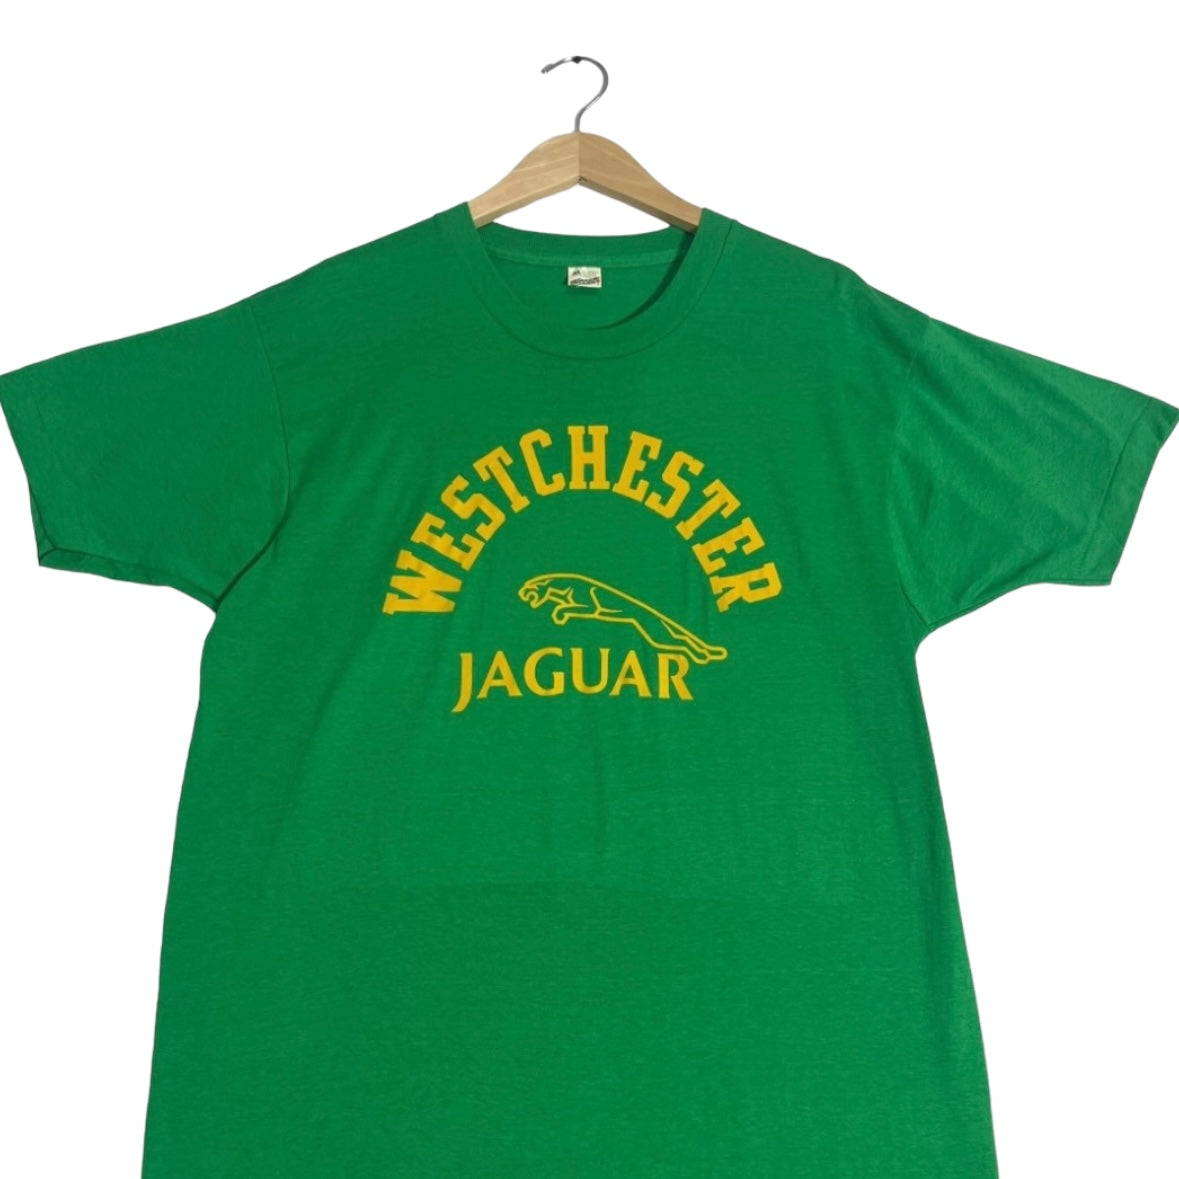 Vintage Westchester Jaguar Tee